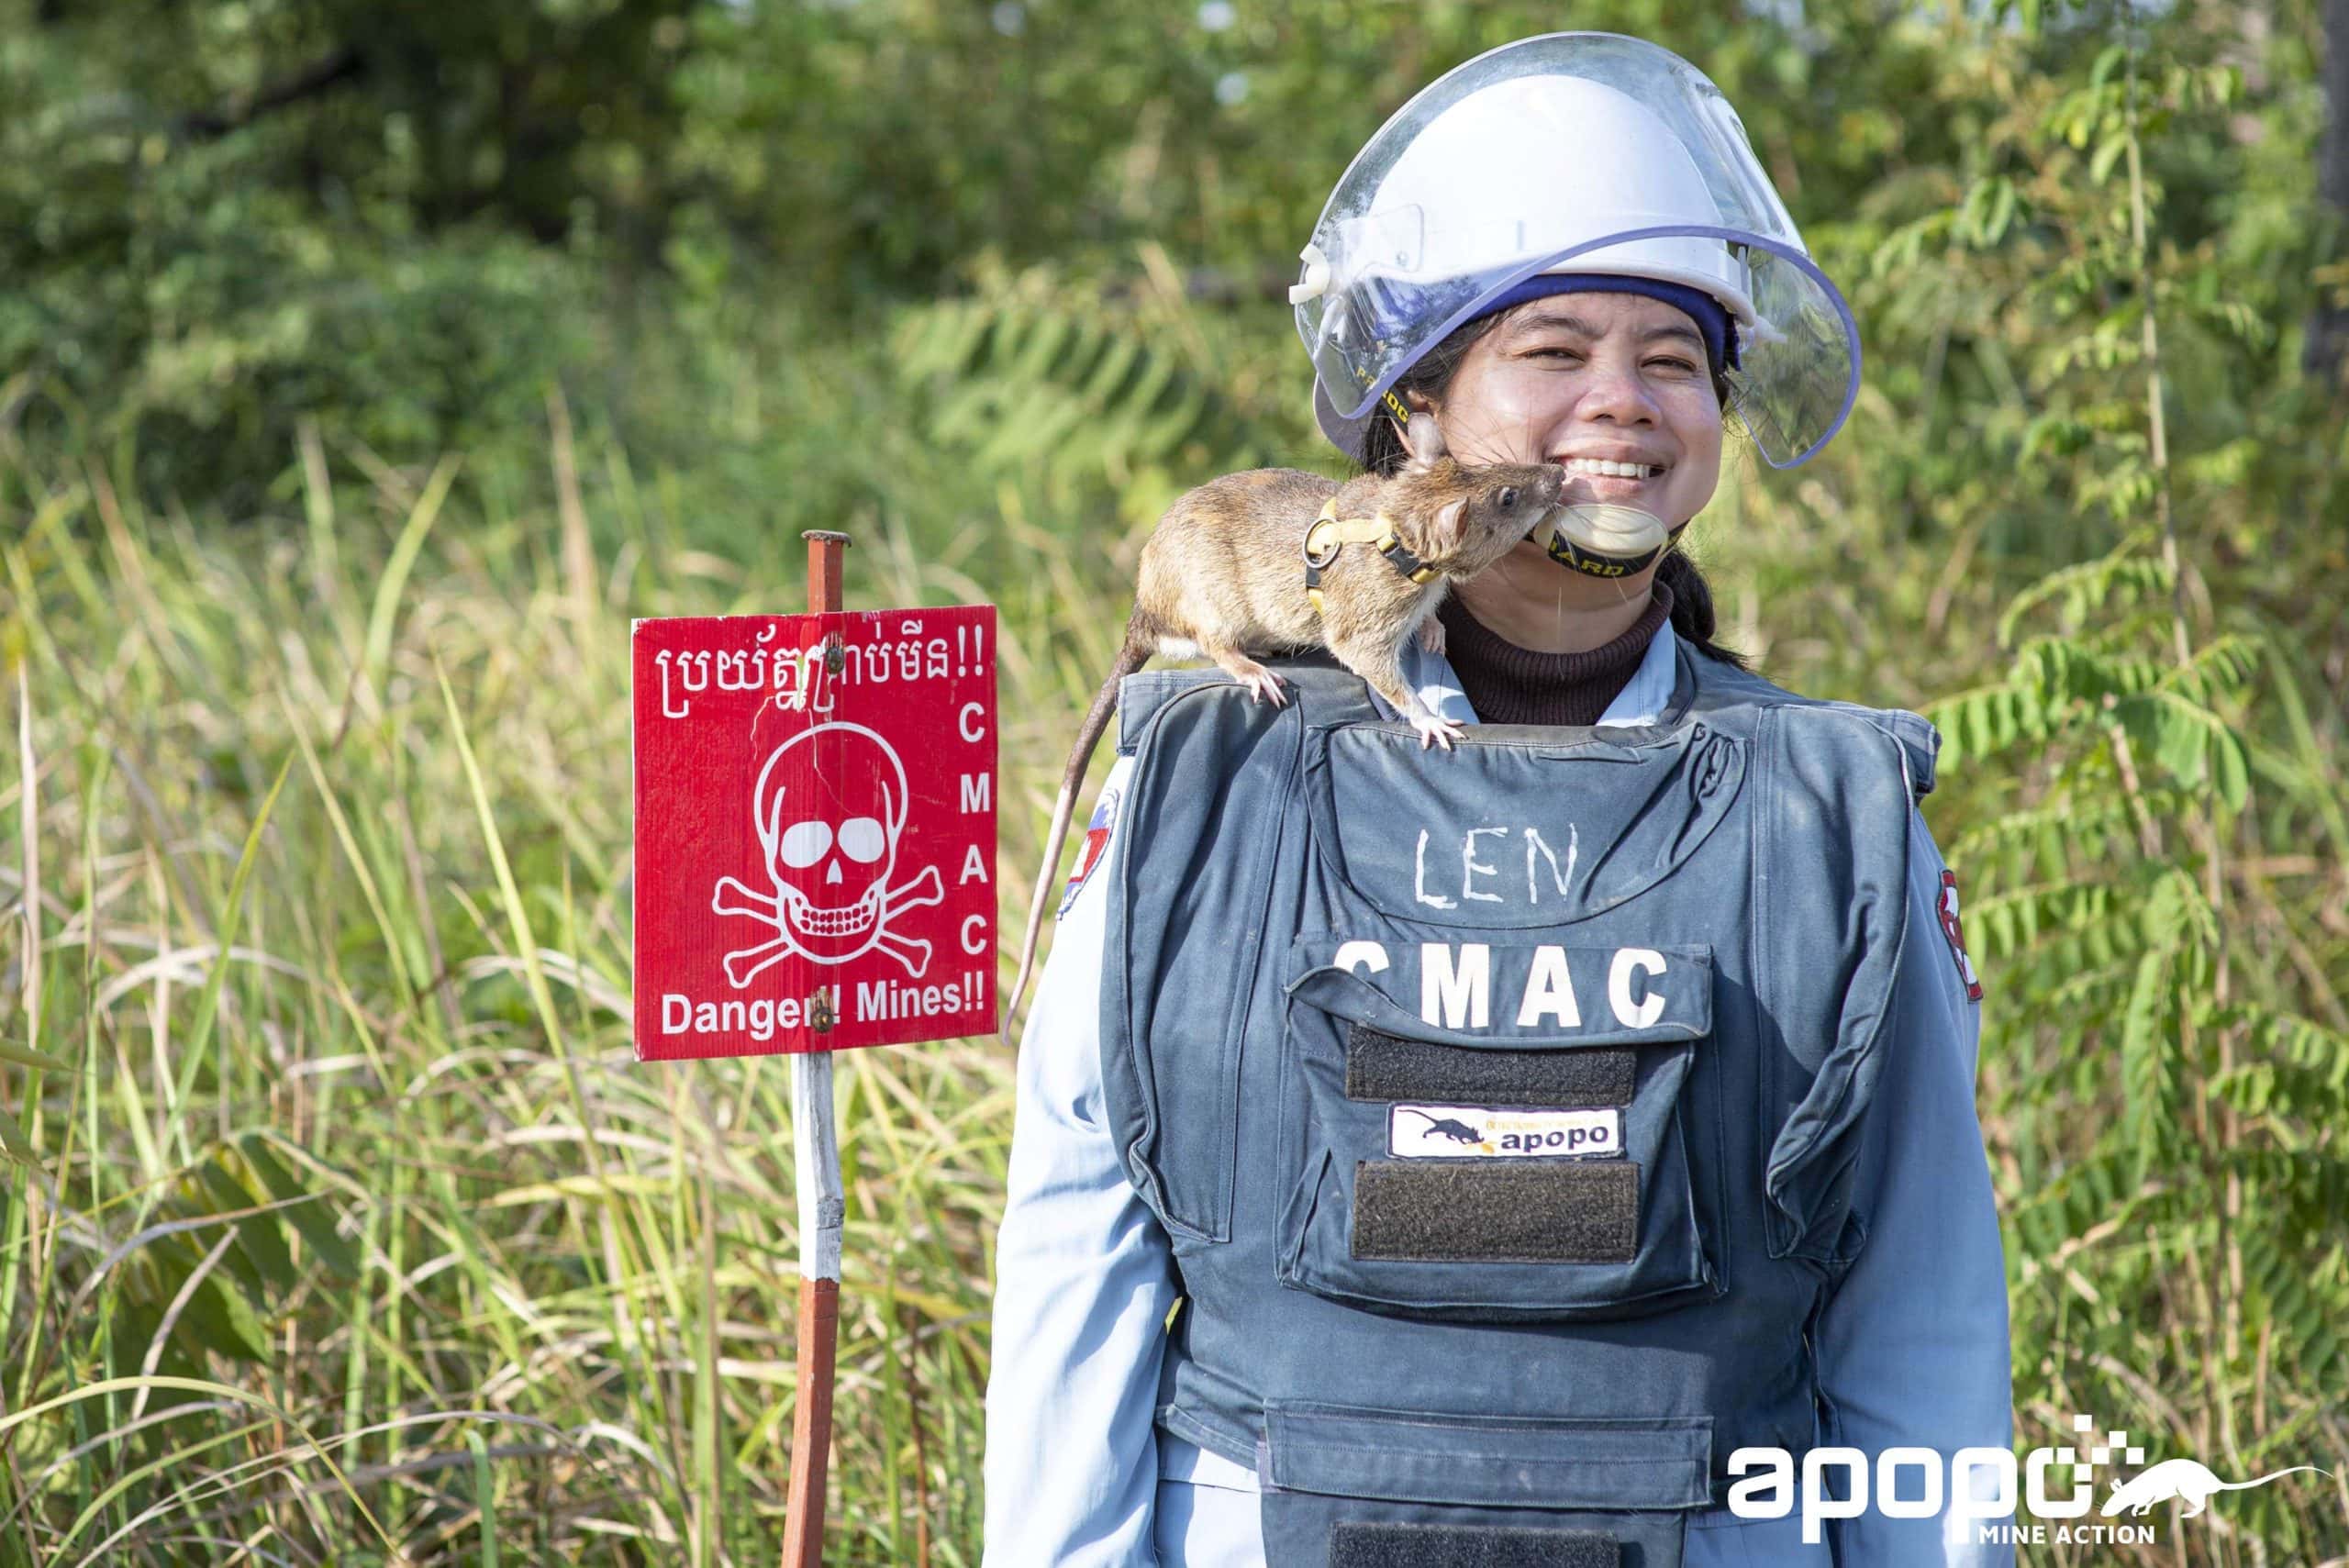 Eine Frau mit Schutzkleidung und einer HeroRAT von Apopo steht vor einem Minenfeld. Links neben ihr steht ein Warnschild mit der Aufschrift "Danger! Mines!"